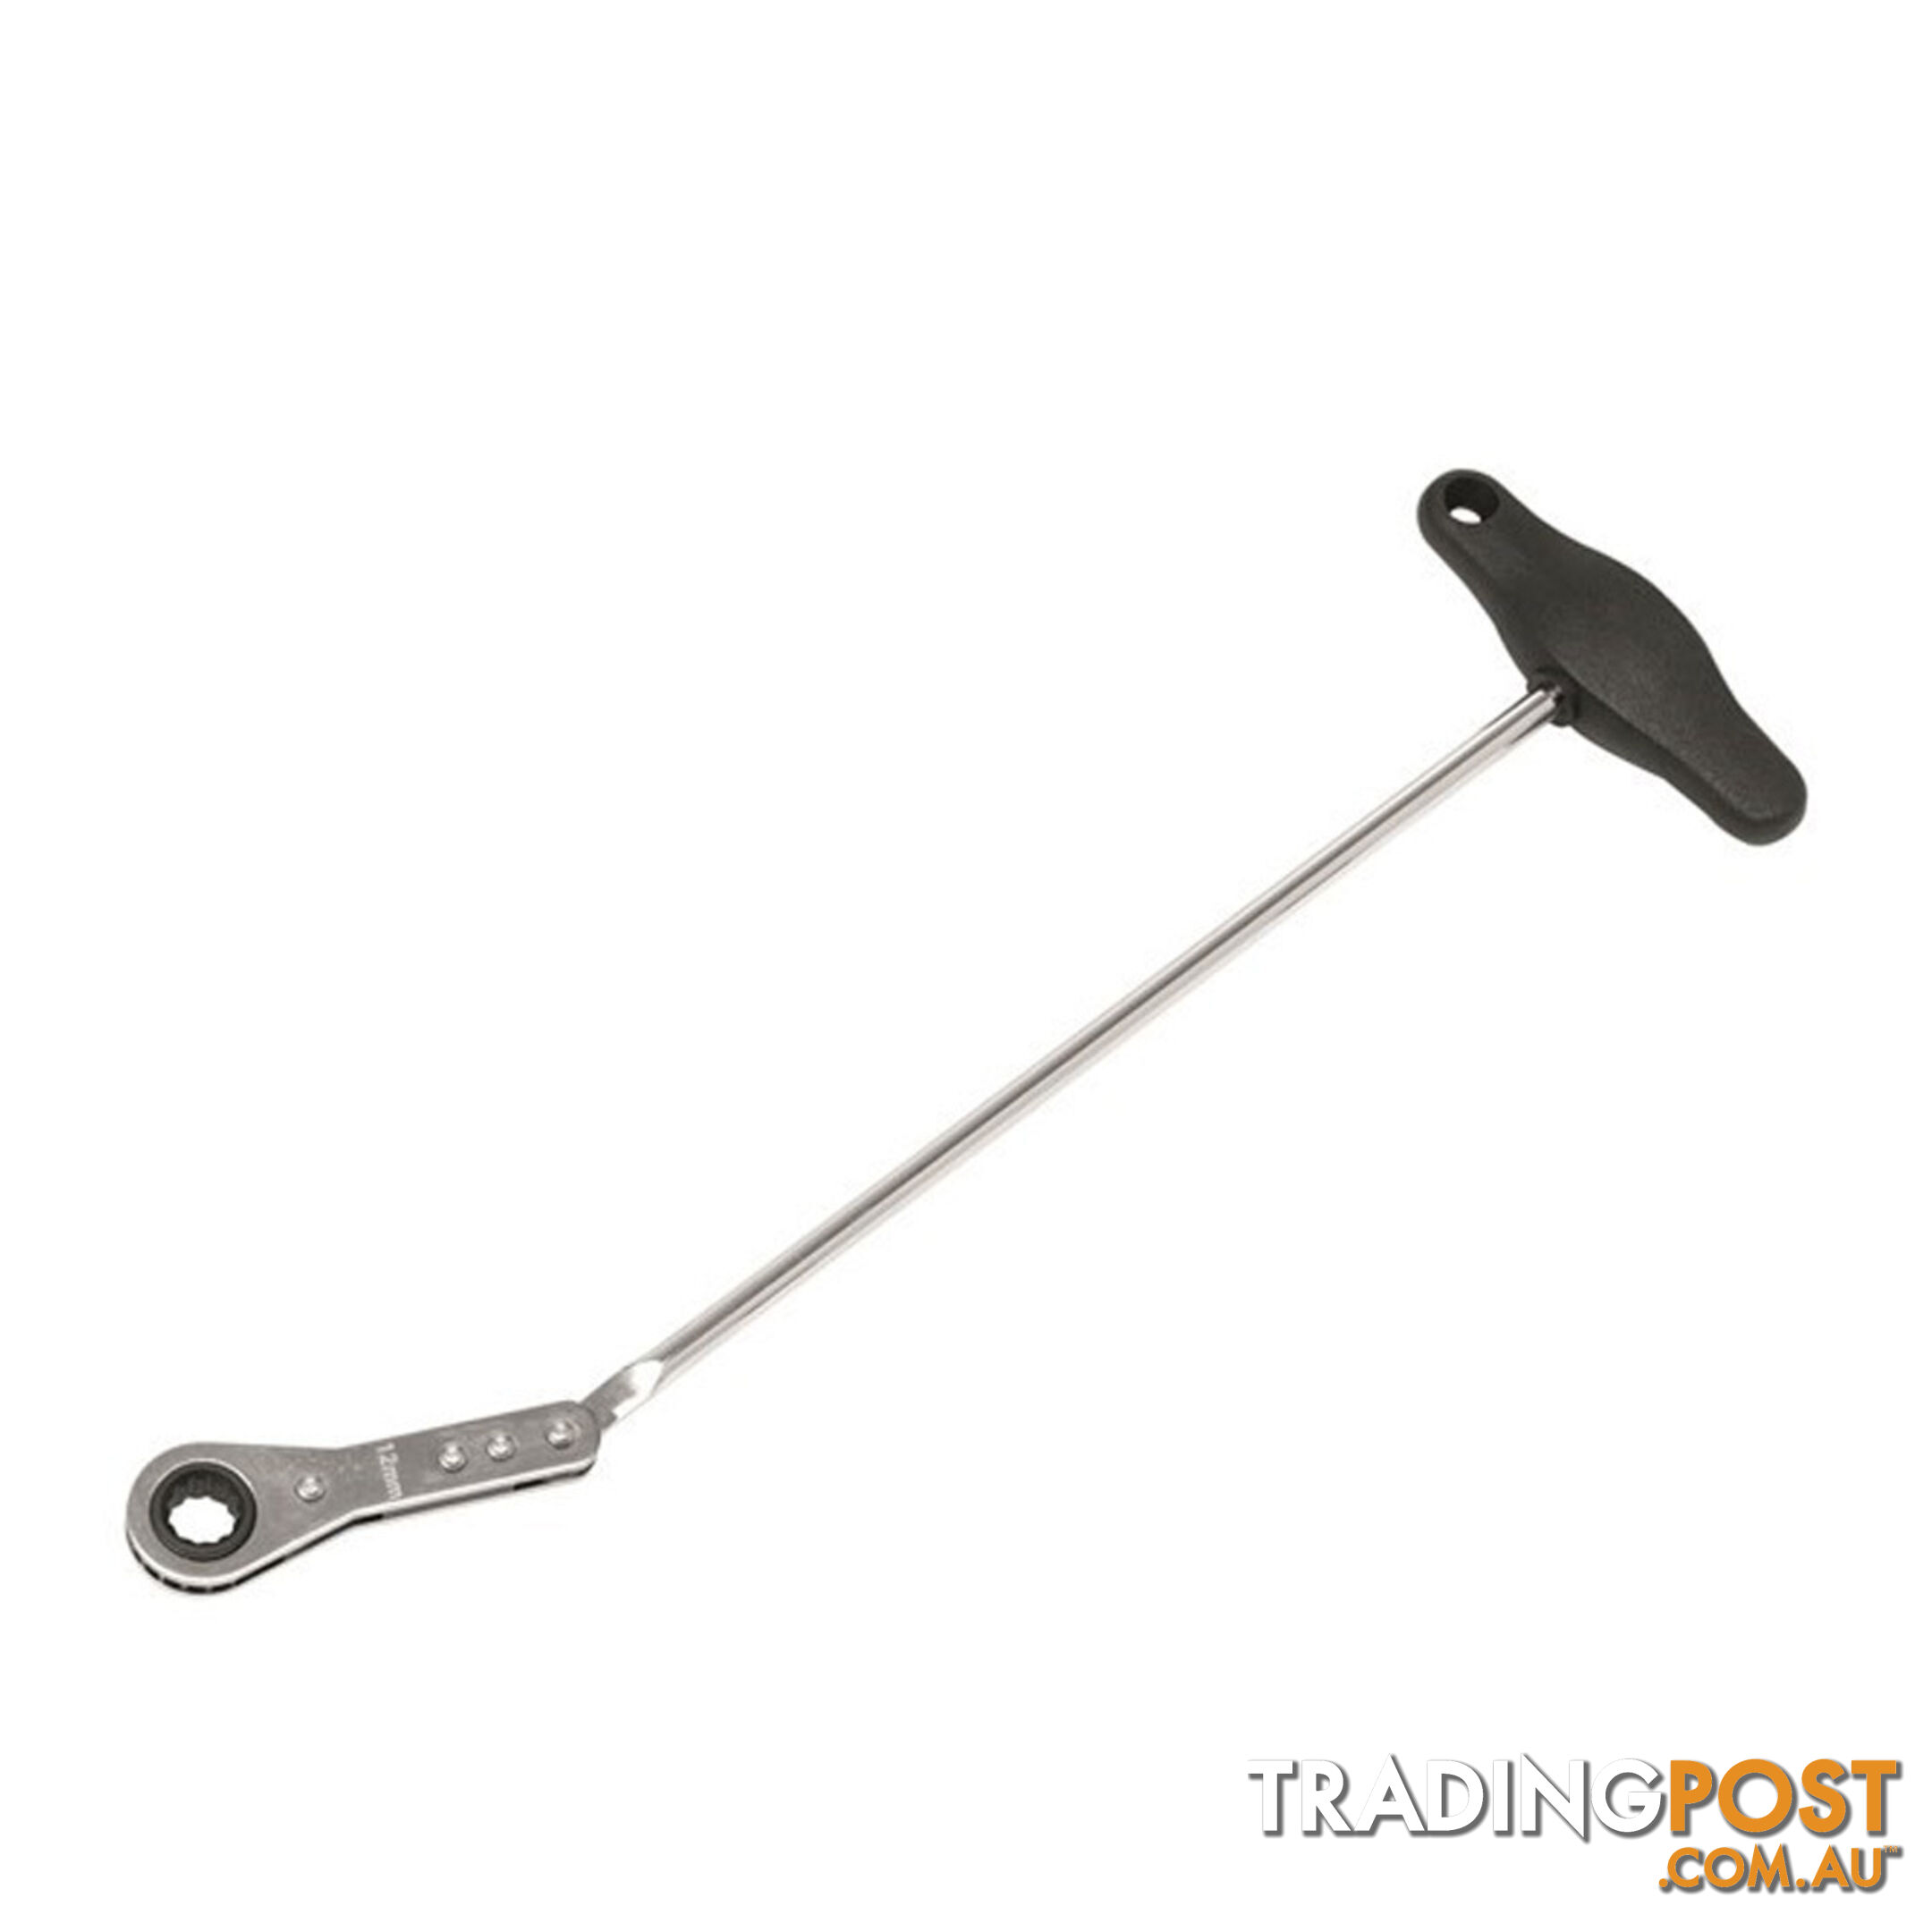 Toledo Ratchet Wrench T-Handle Spline M10 SKU - 301256